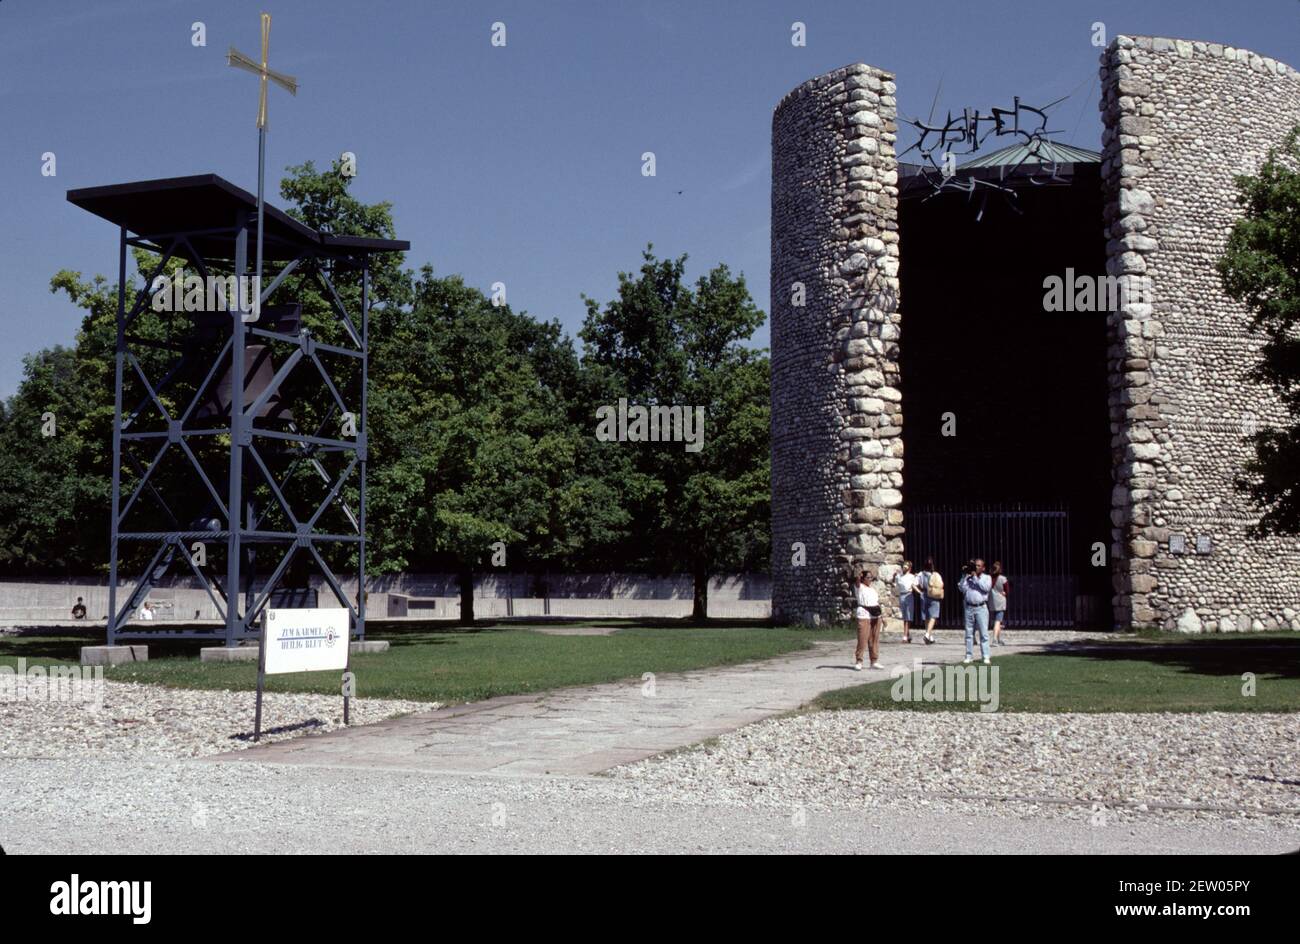 Dachau, Germania. 6/26/1990. Museo del campo di concentramento di Dachau. Dal 22 marzo 1933 al 29 aprile 1945. Primo campo costruito dal Reich nazista. Immagini d'epoca di caserme, edifici e disposizione del campo. Foto Stock